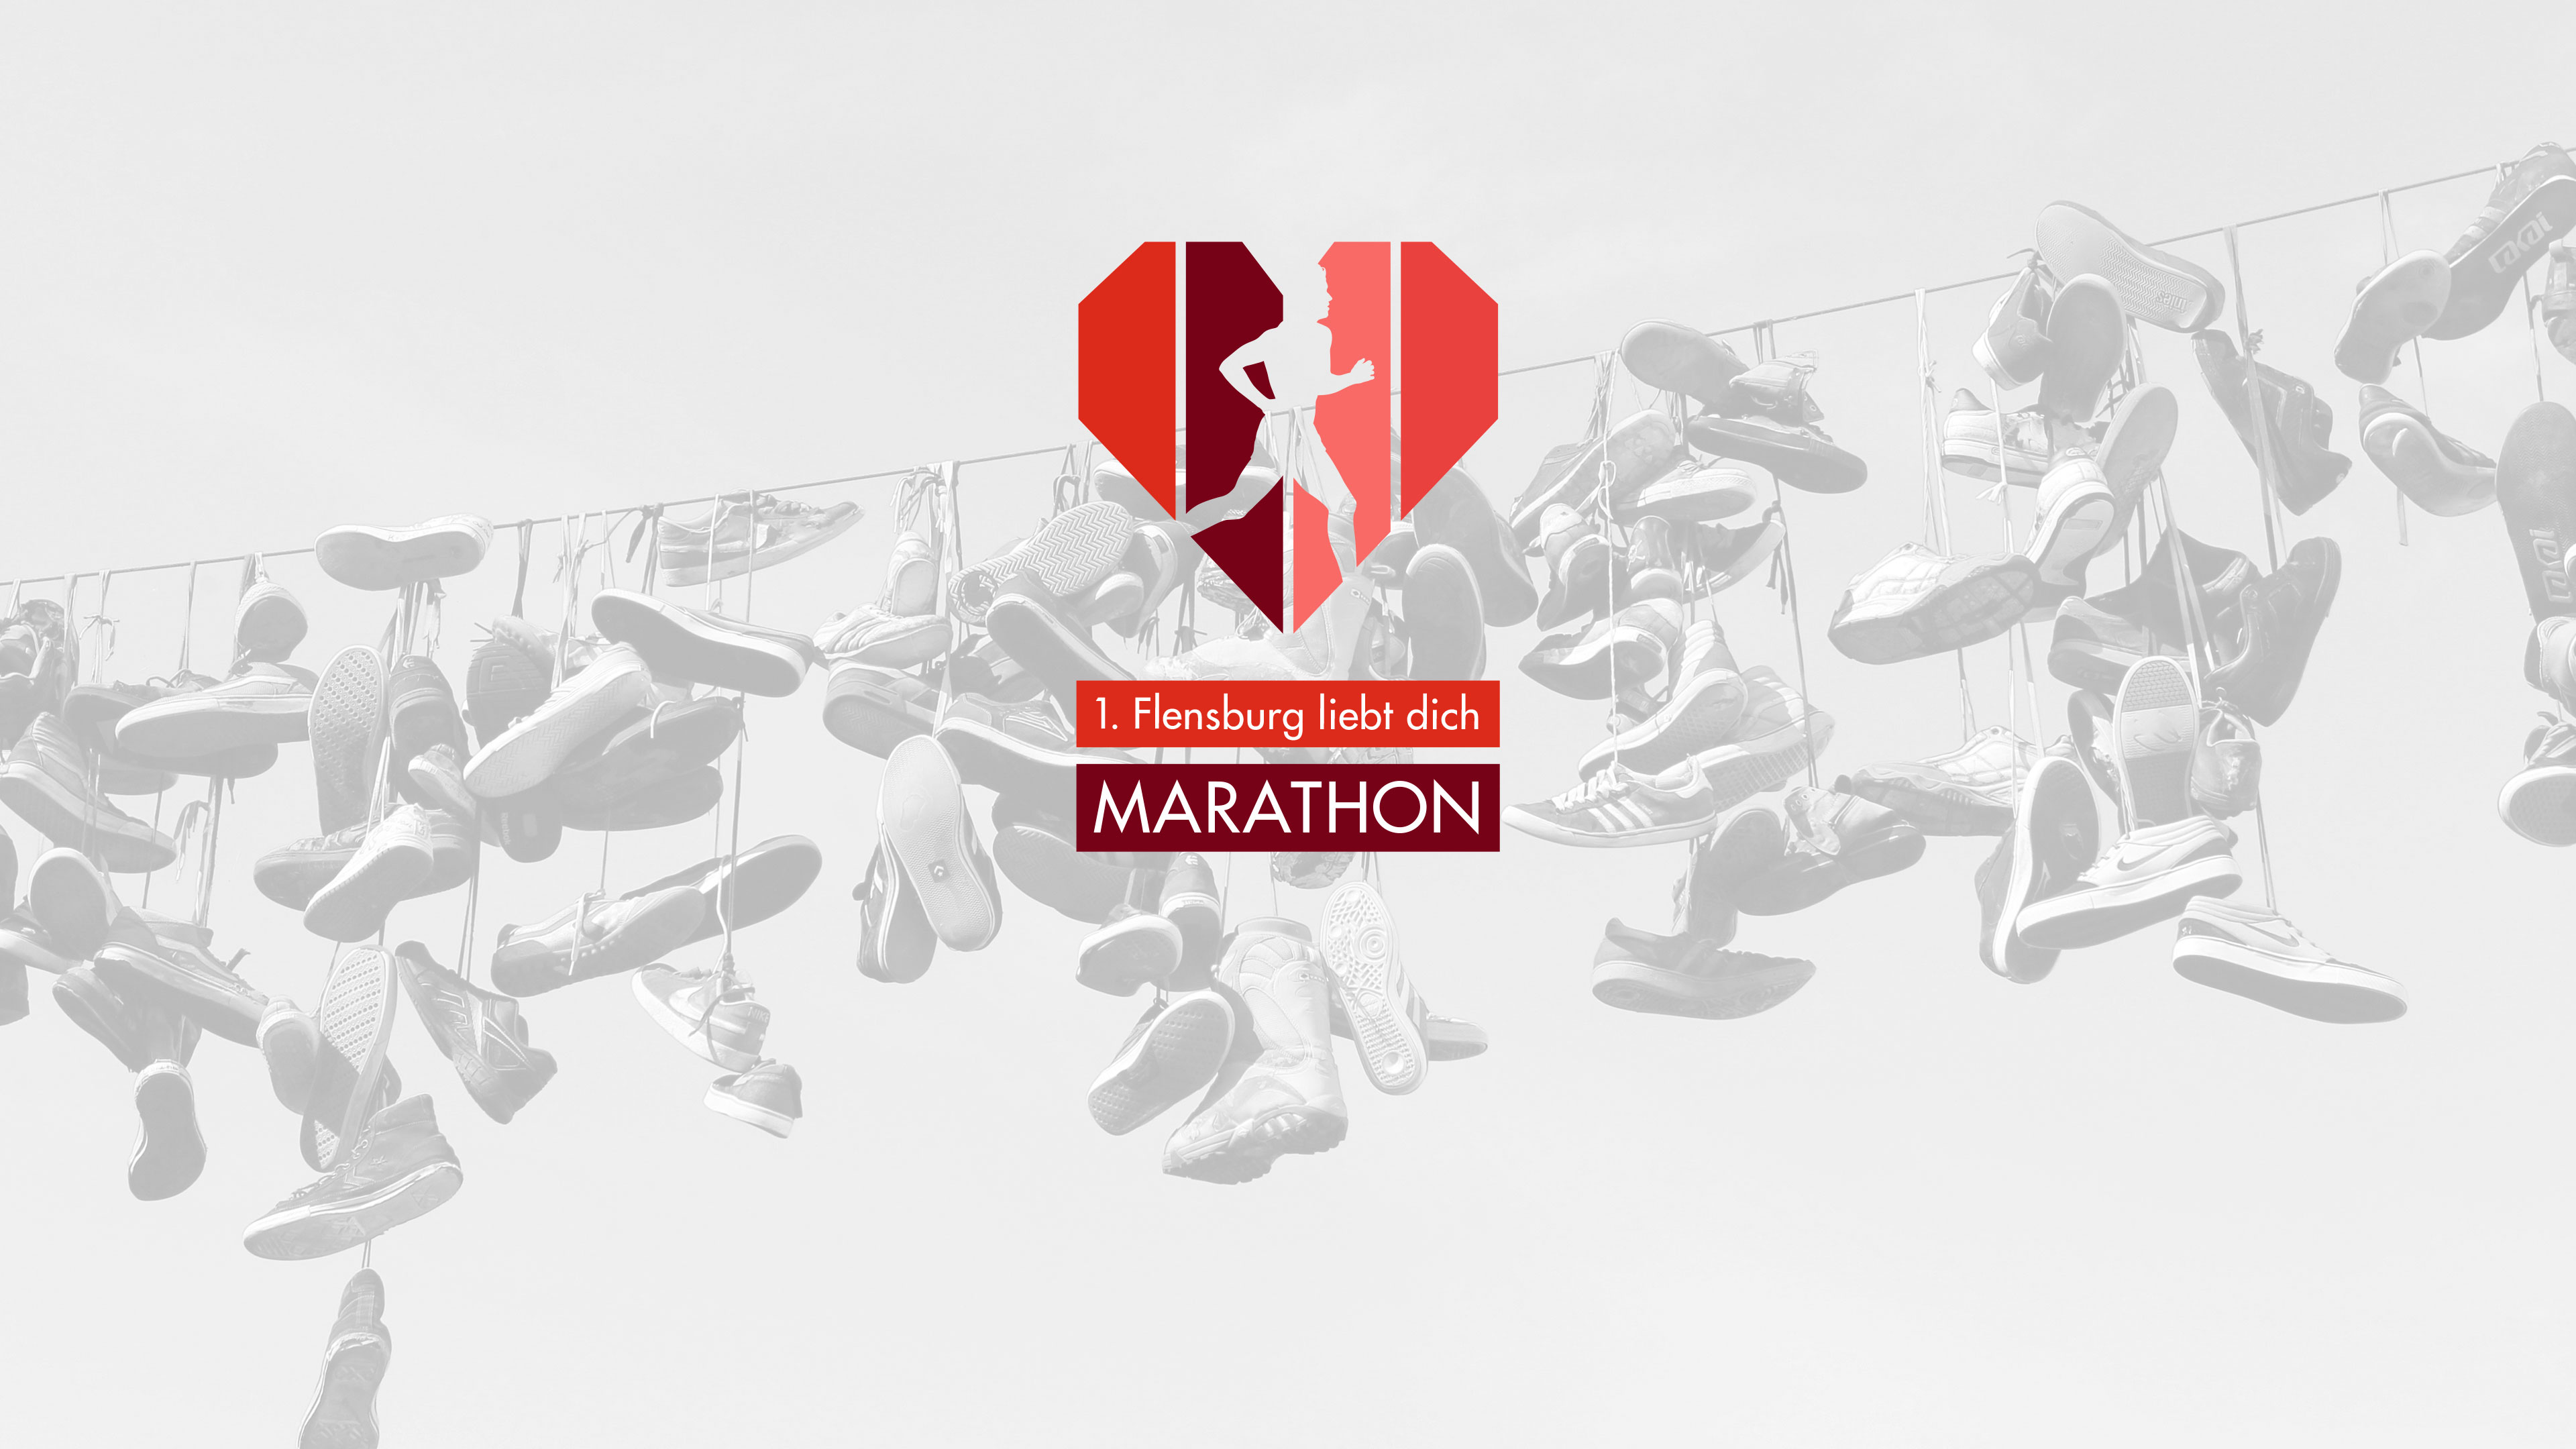 Logo mit rotem Herz und Läufer "1. Flensburg liebt dich Marathon" vor transparenter typisch Flensburger Schuhleine